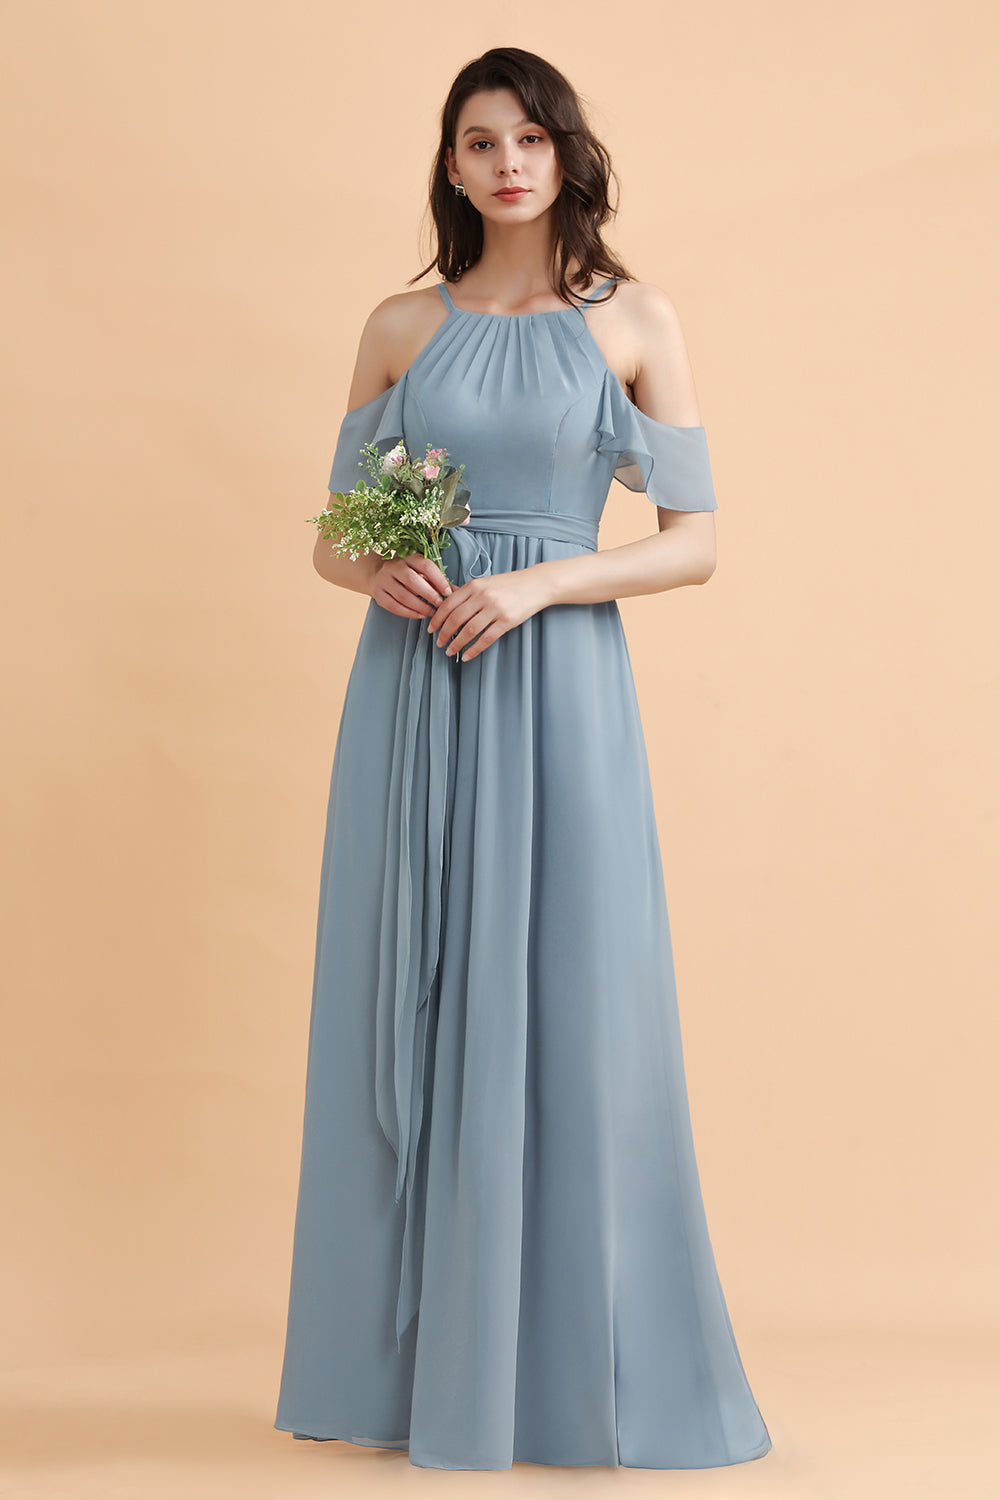 Finden Sie Stahlblau Brautjungfernkleider Günstig online bei babyonlinedress.de. Brautjungfernkleid Lang Chiffon online nach maß anfertigen.